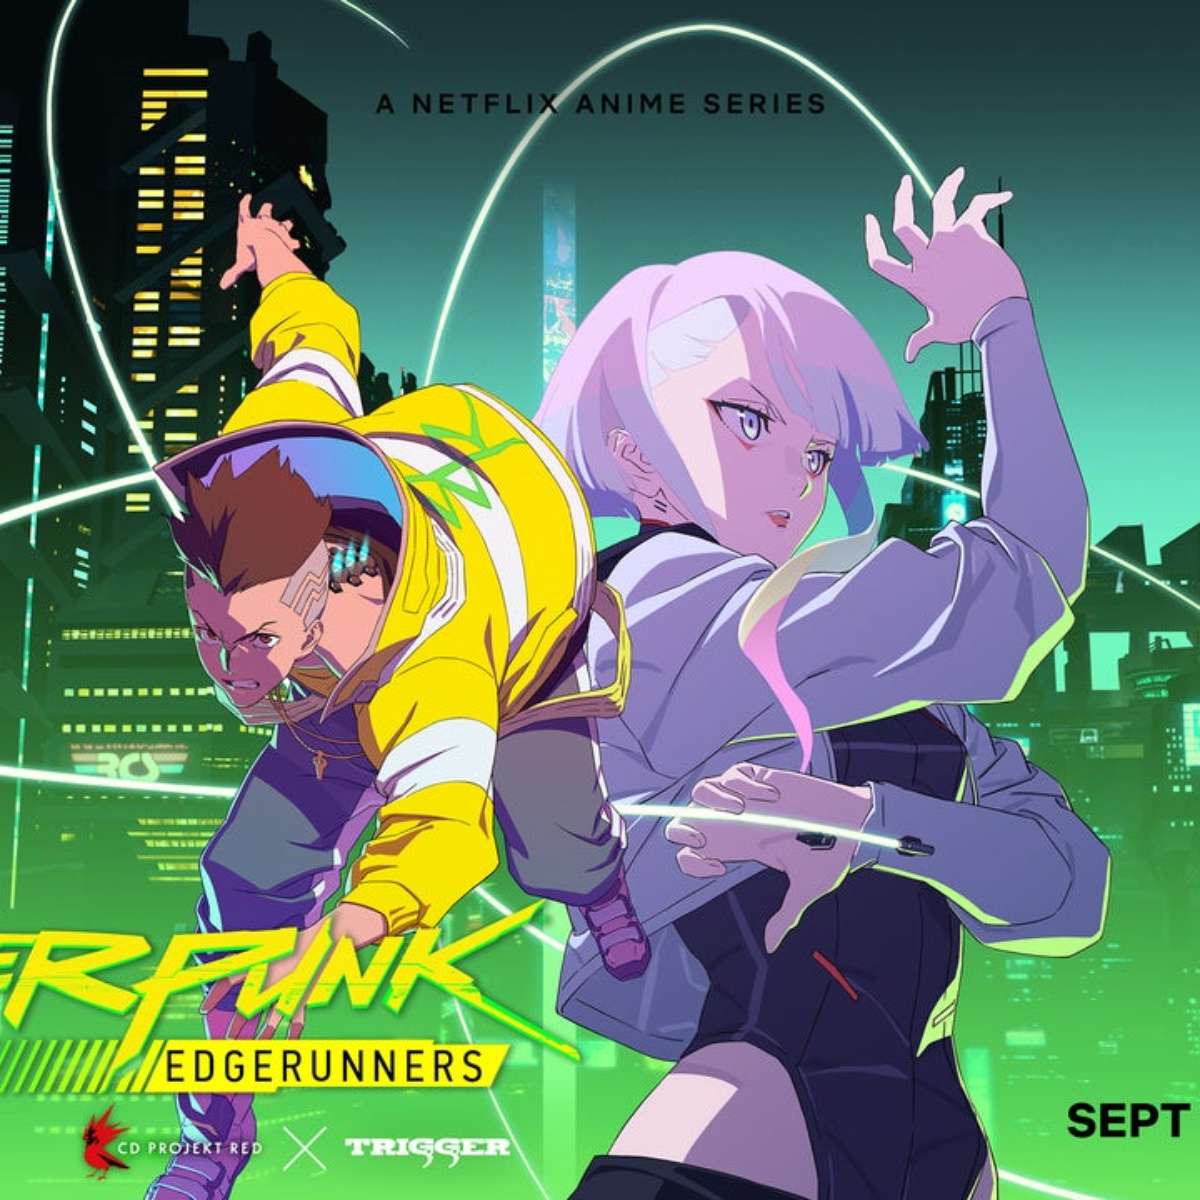 Cyberpunk: Mercenários: anime inspirado no jogo chega em setembro na Netflix